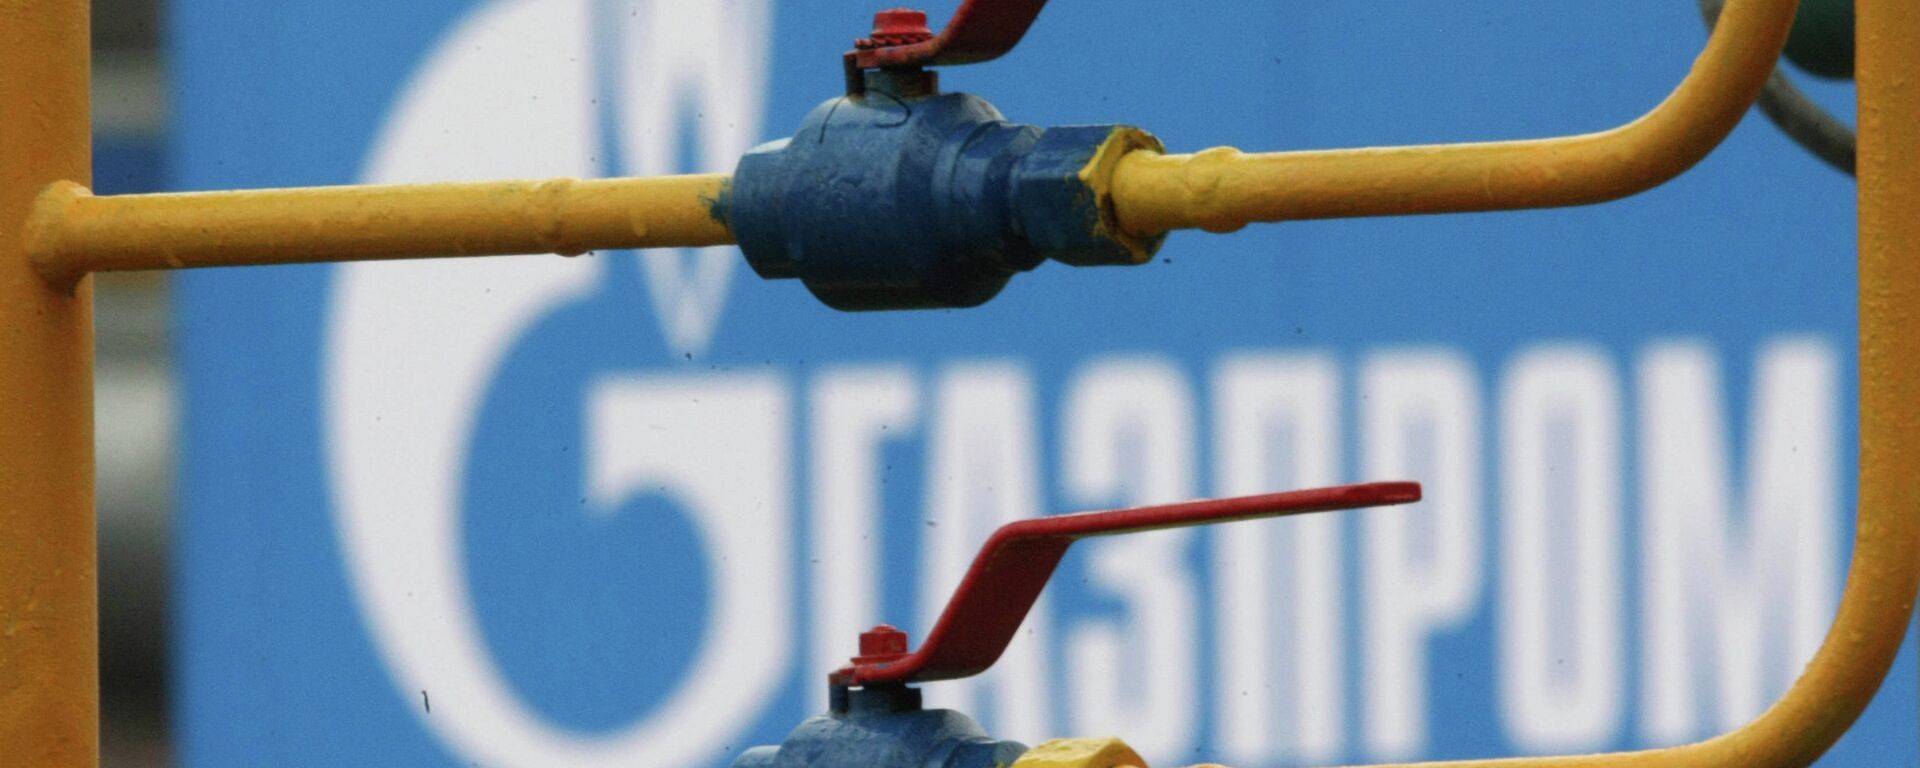 Снабдевање гасом кроз Турску не подразумева достављање гаса до крајњег корисника, као што је планирано „Јужним током“, већ до саме границе, и то по принципу „узми или плати” - Sputnik Србија, 1920, 09.11.2021